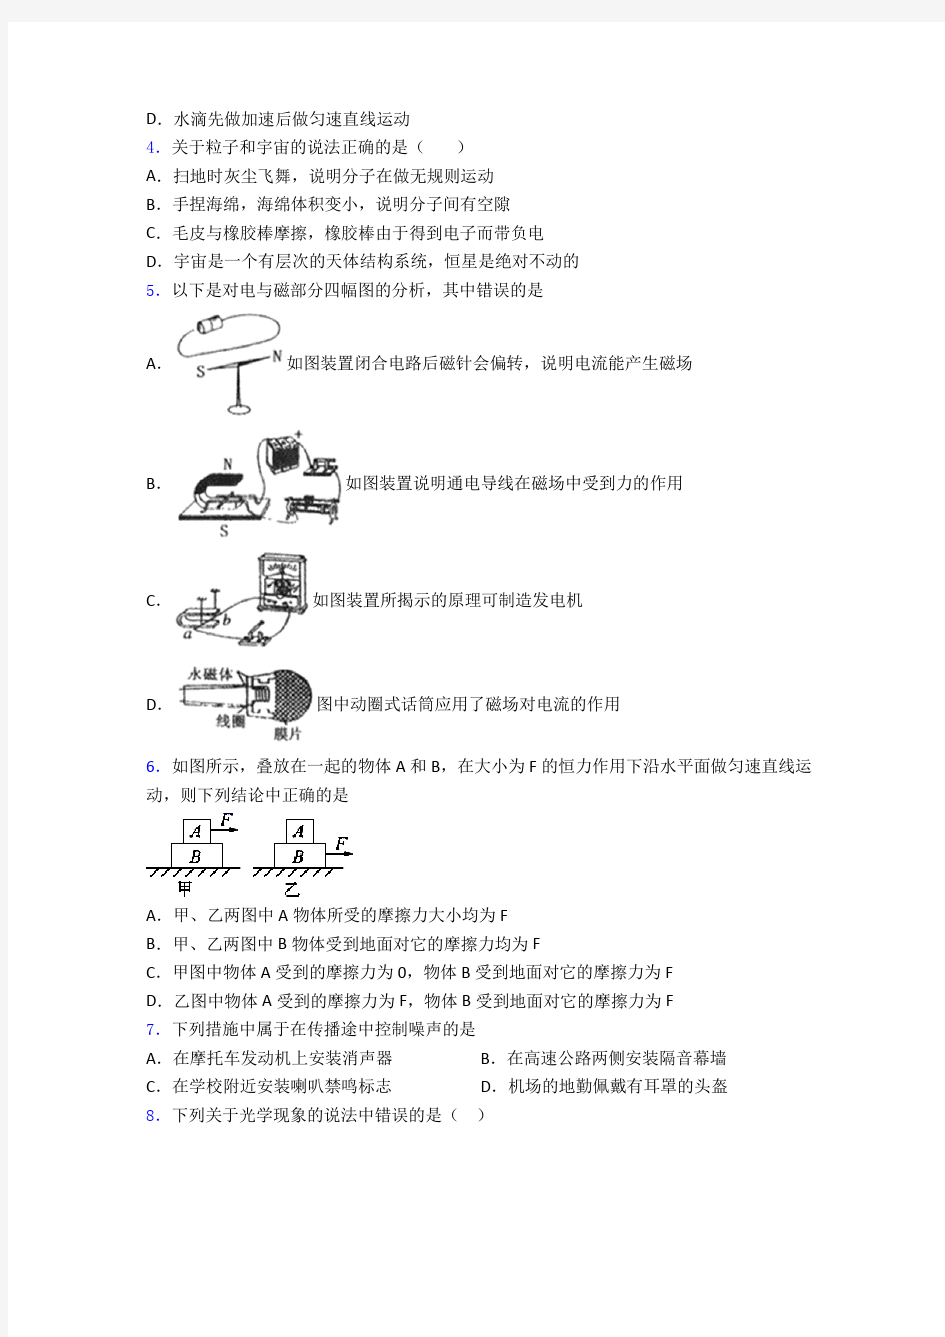 河北省石家庄市第一中学人教版九年级普通高中提前招生考试物理试题